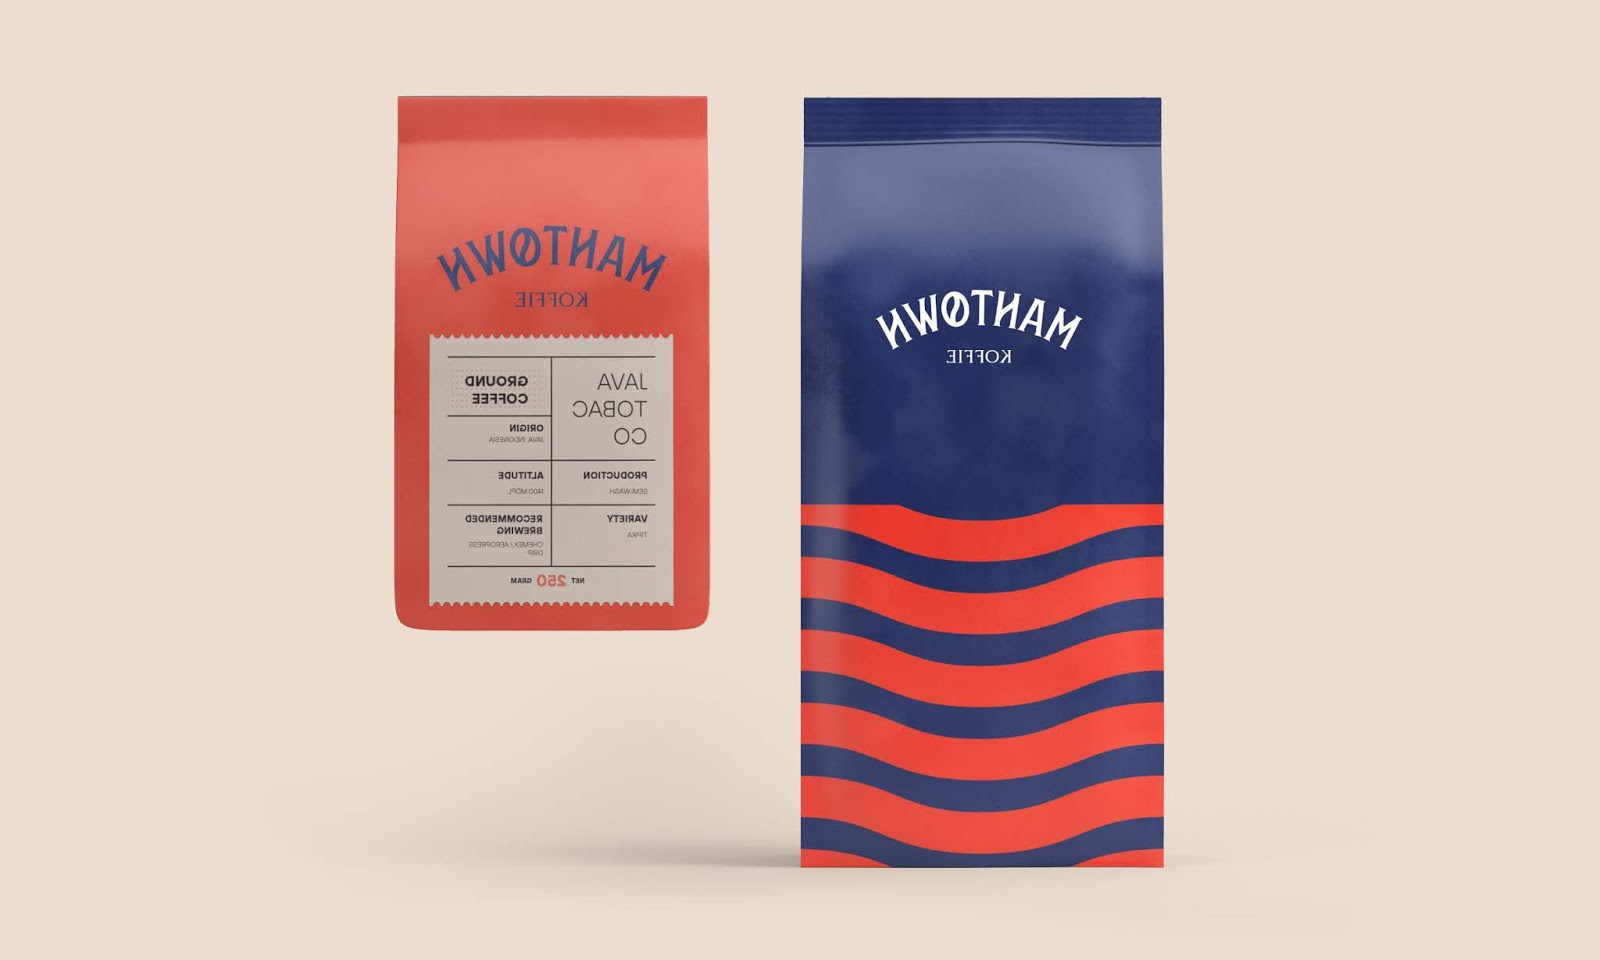 位于荷兰的工匠咖啡店品牌包装设计(图3)